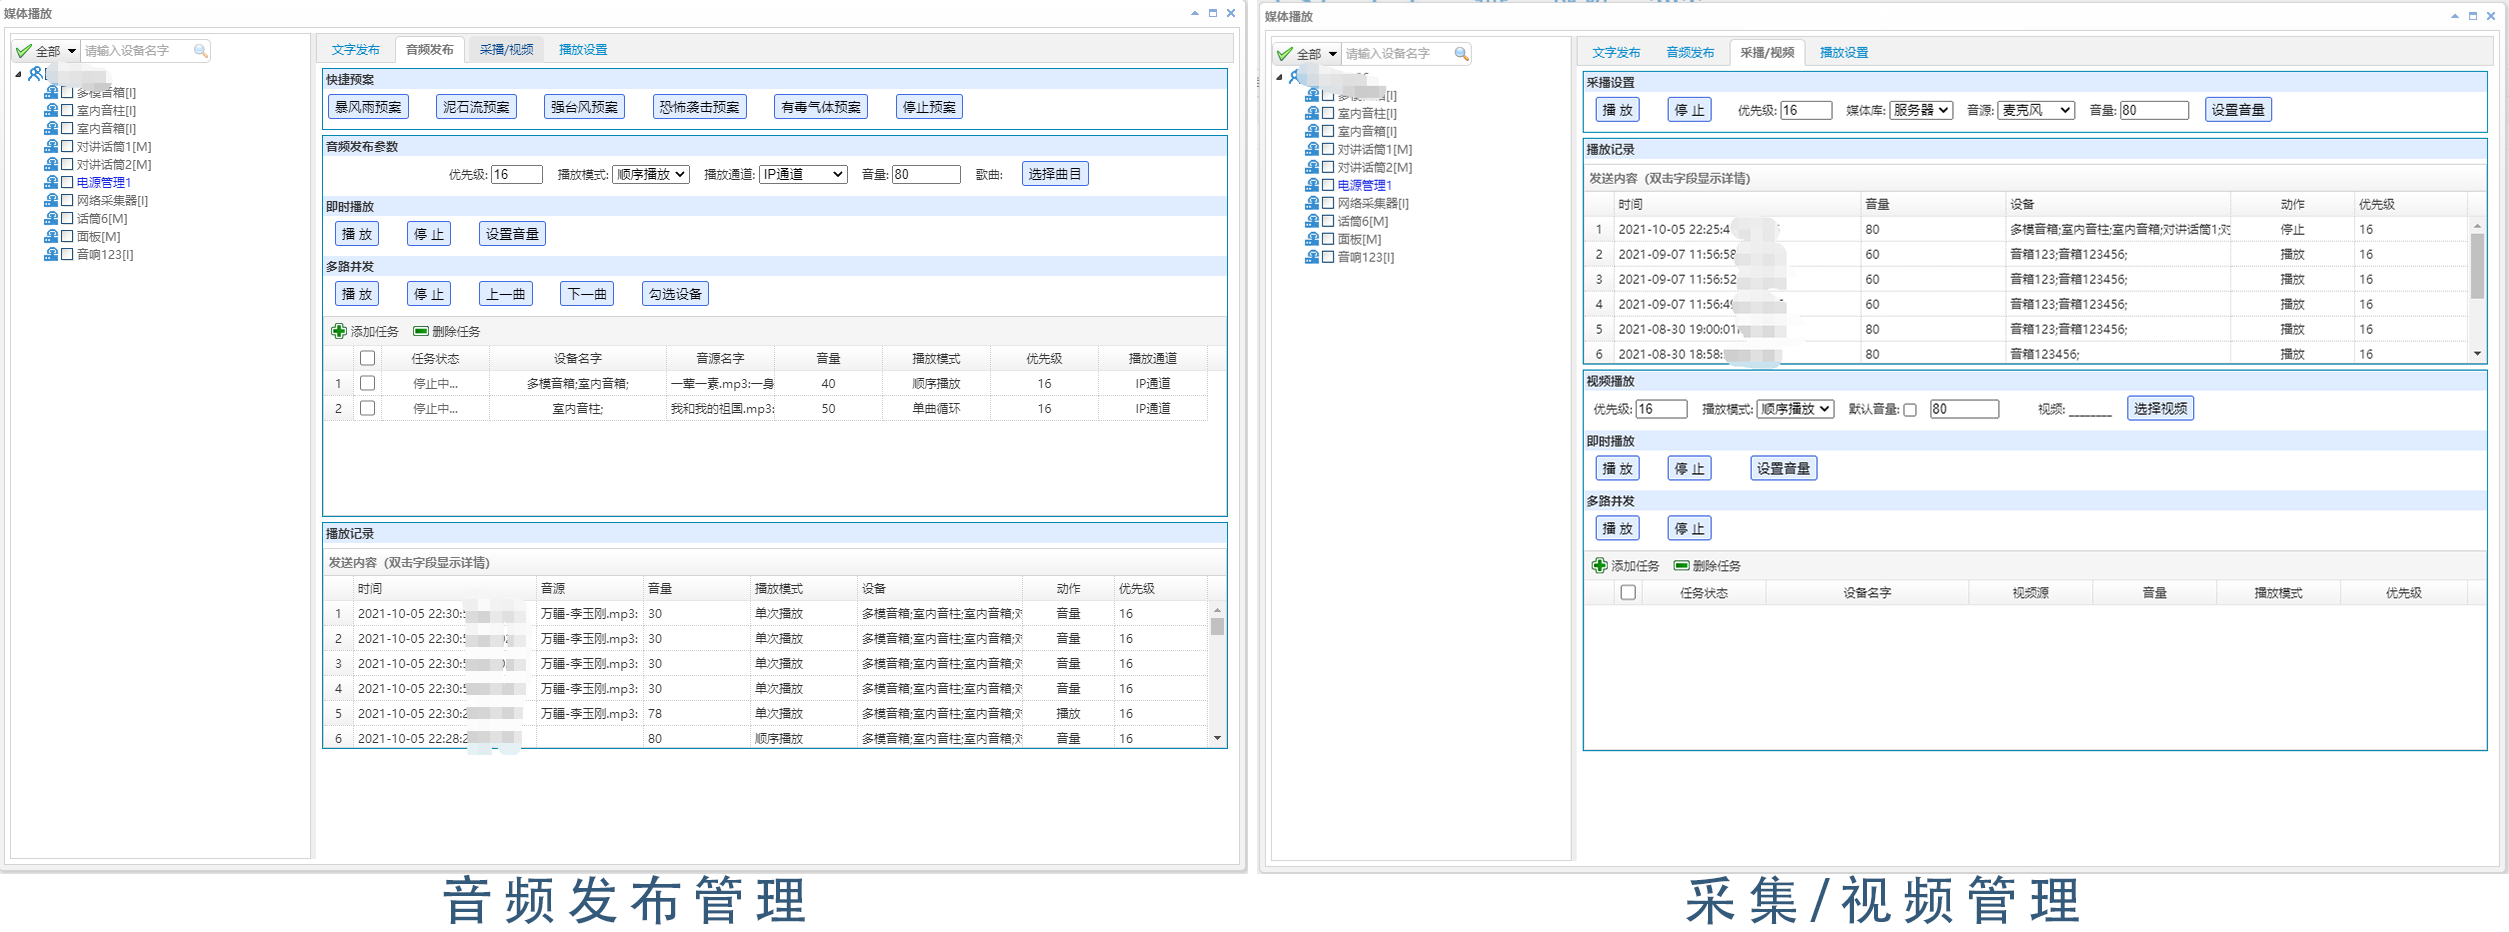 广州辉群IP数字网络广播平台管理软件之实时任务功能.png